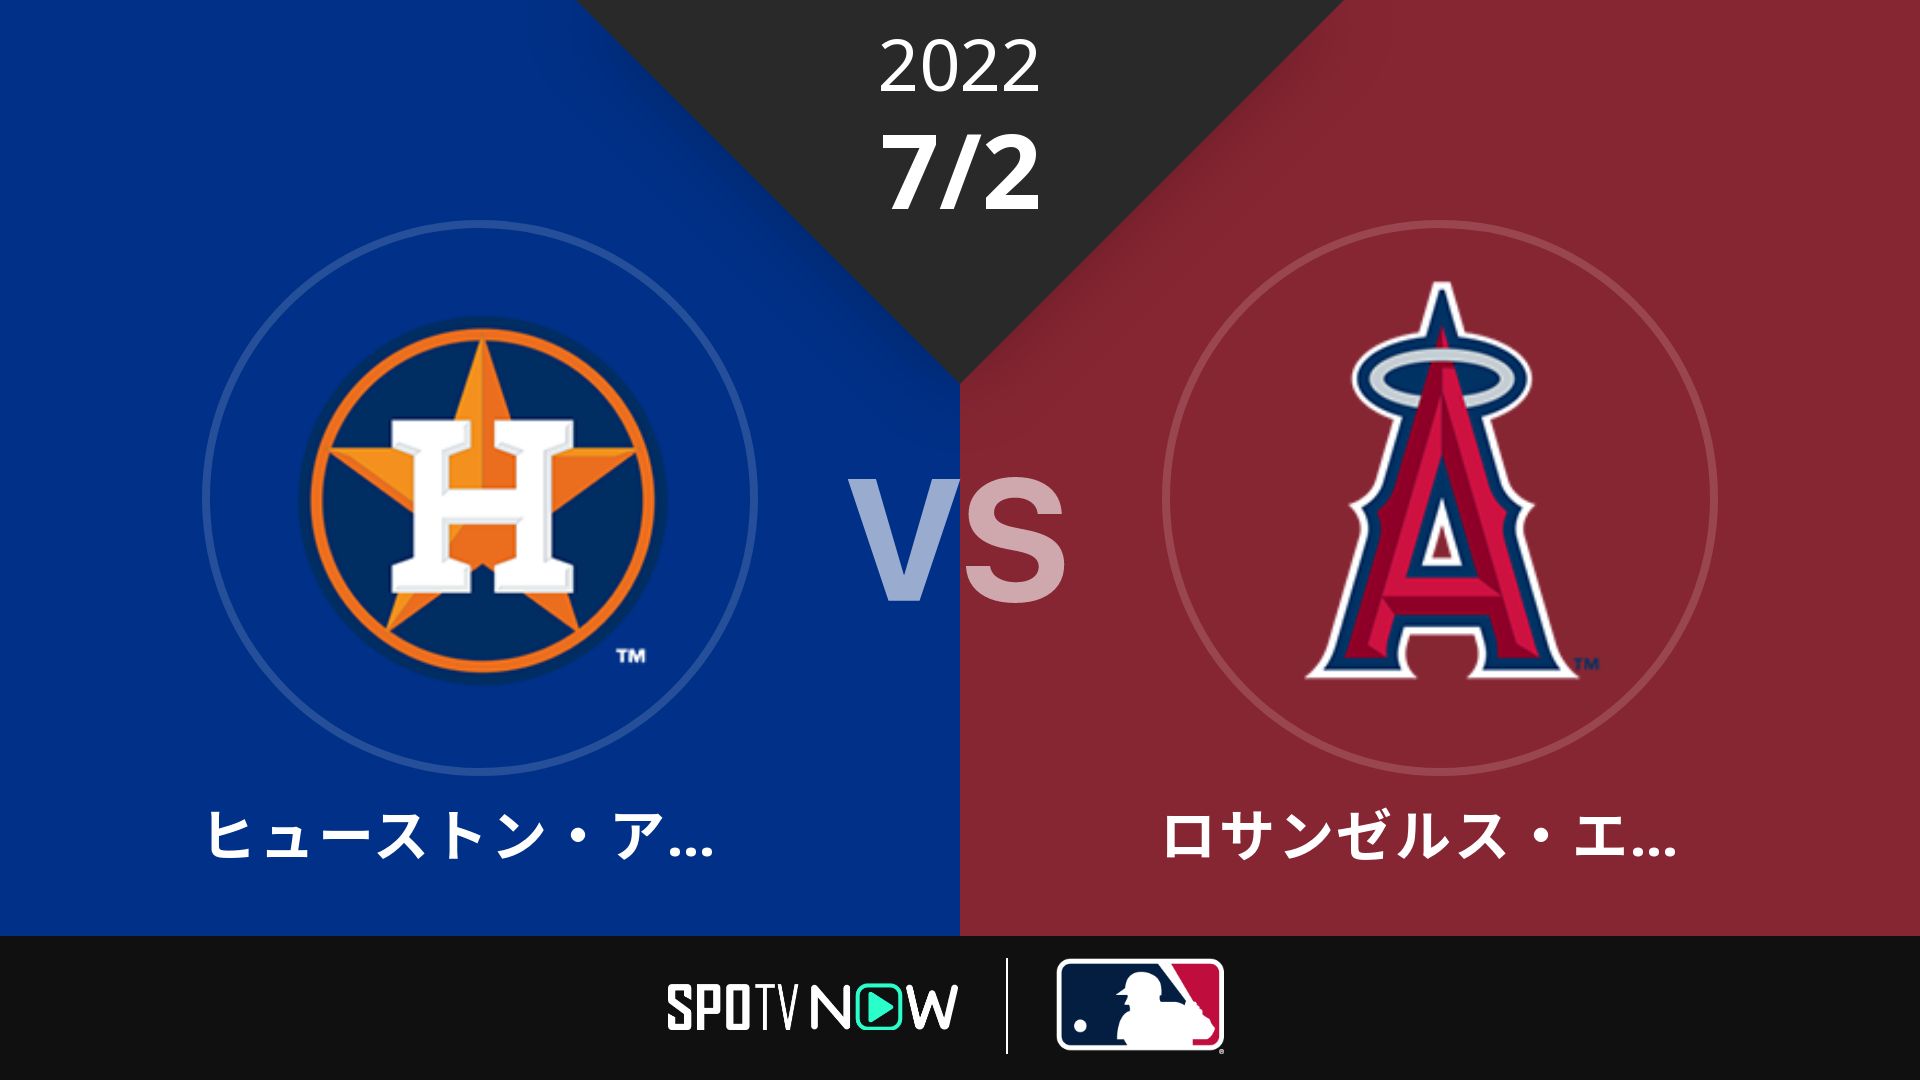 2022/7/2 アストロズ vs エンゼルス [MLB]